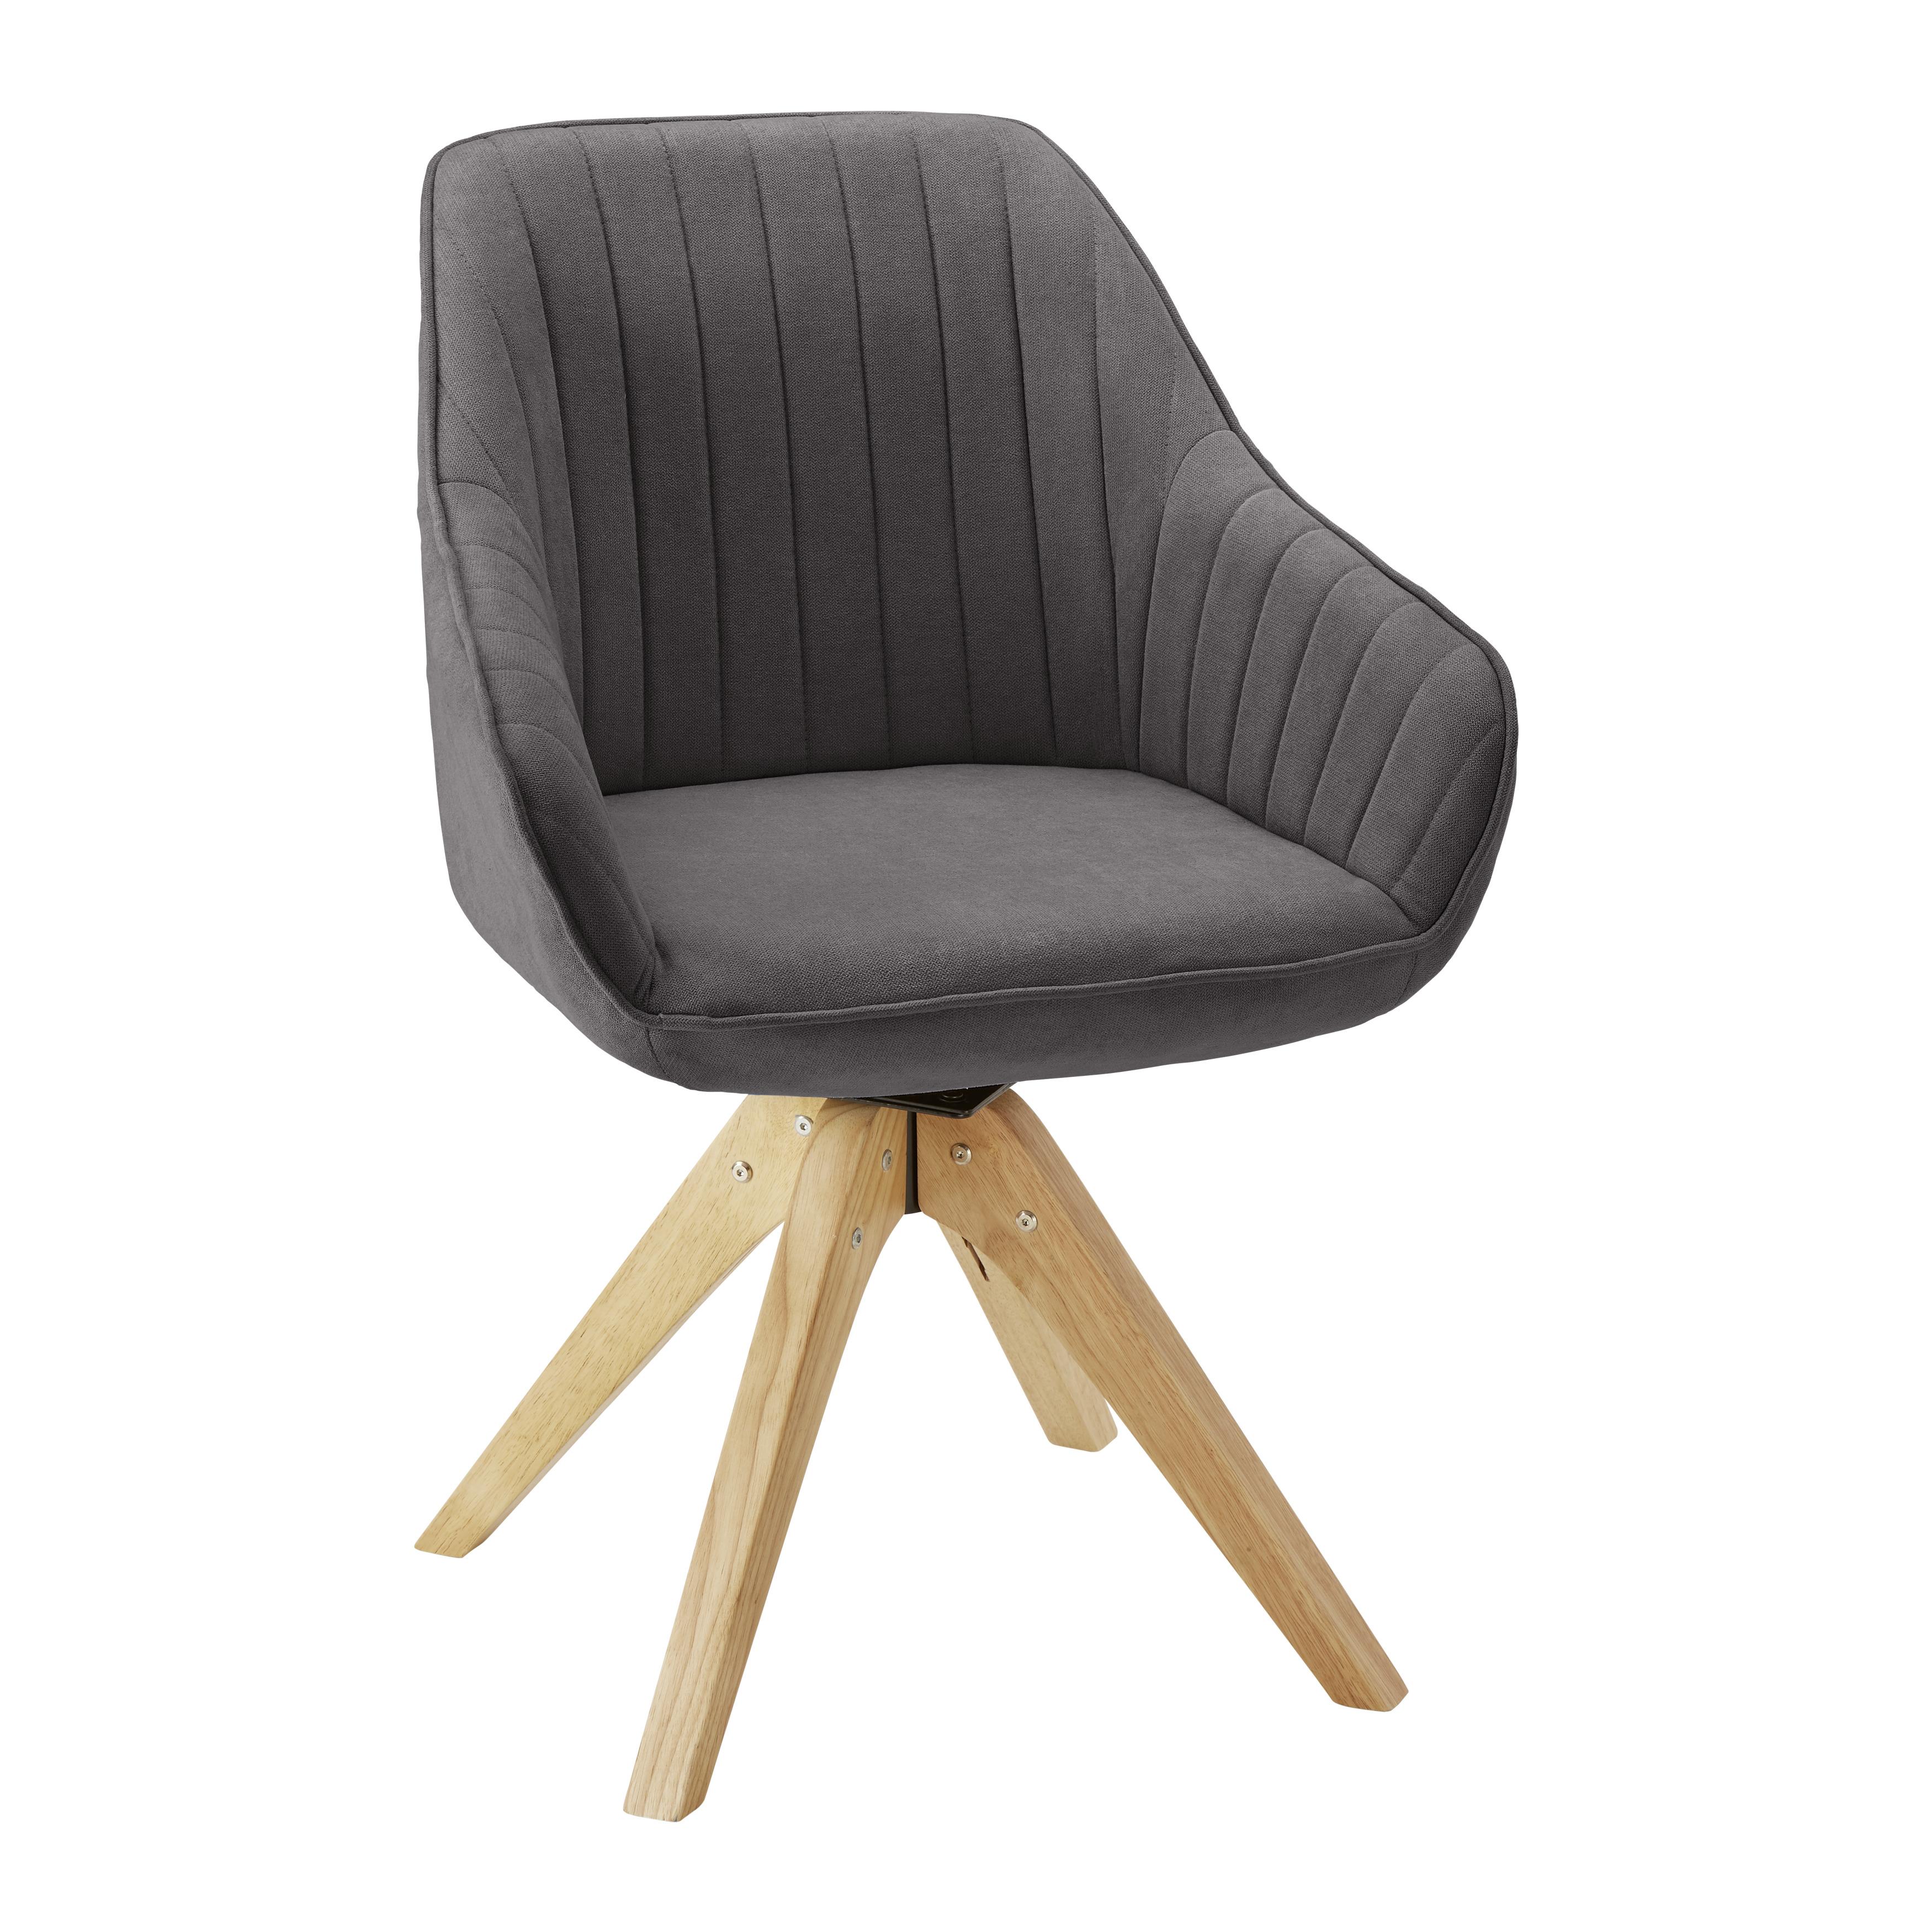 Jídelní Židle Leonie - šedá/barvy dubu, Moderní, dřevo/textil (60/84/61cm) - Modern Living